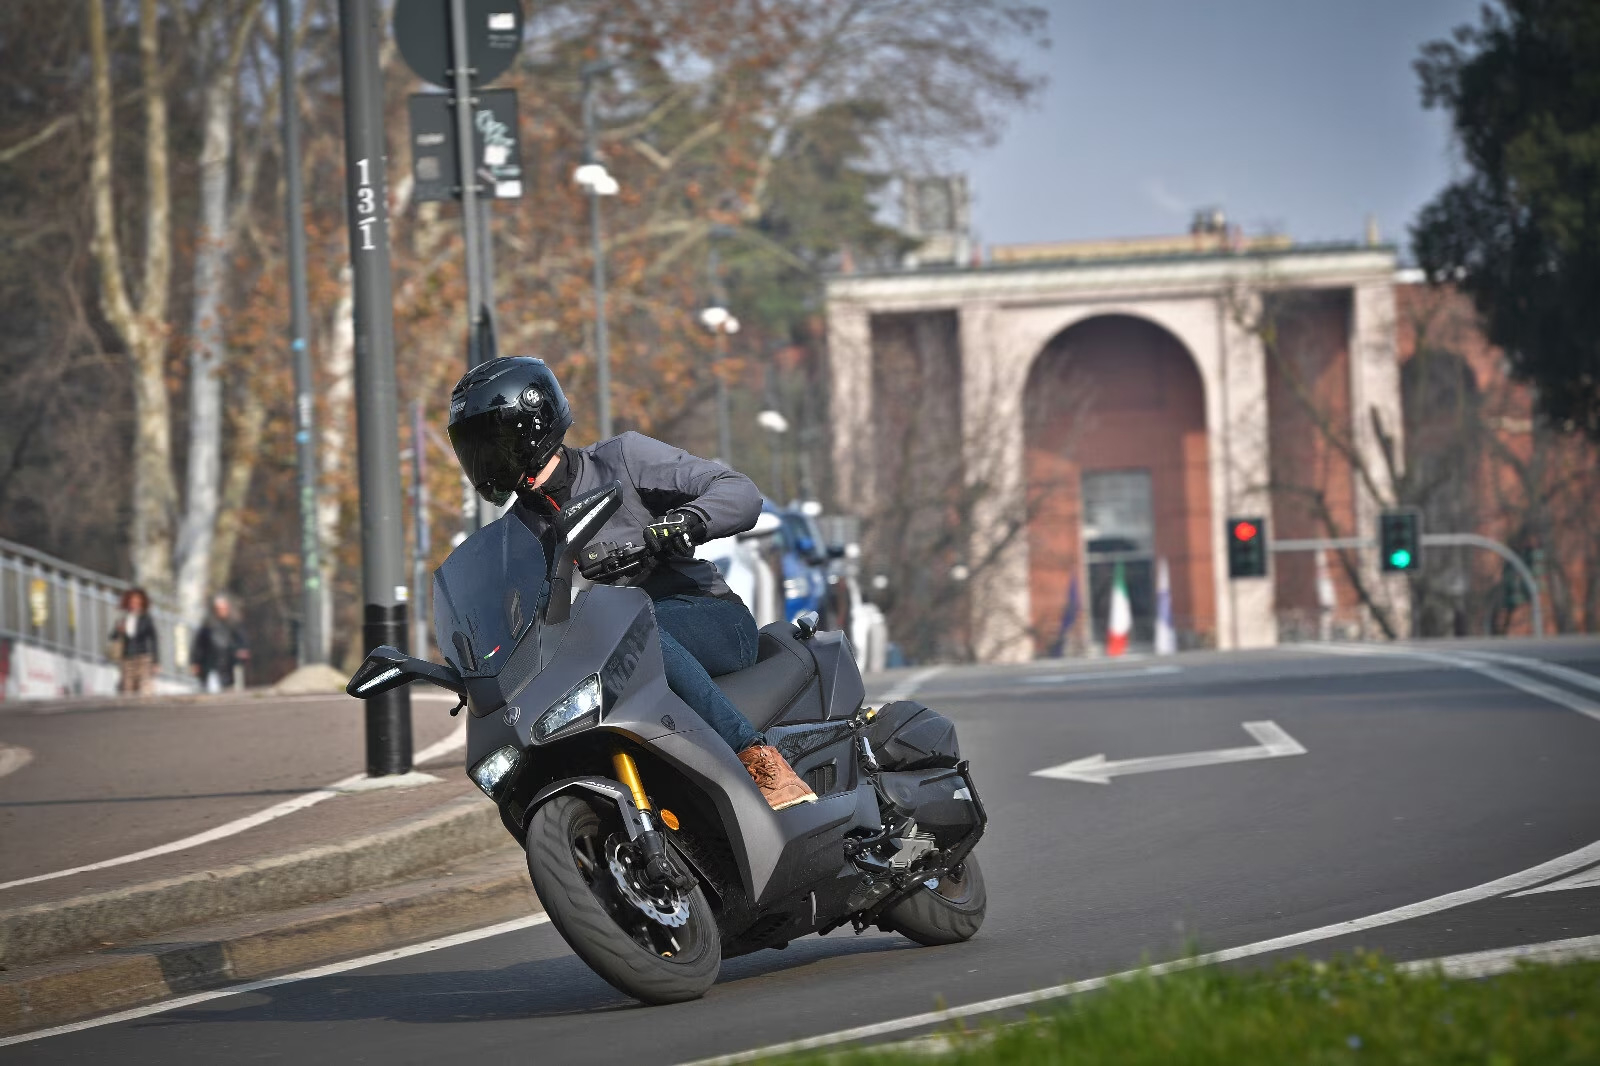 [Inmoto] Prova dello STORM-R 300: uno scooter di media cilindrata con prestazioni di alto livello e un design accattivante.